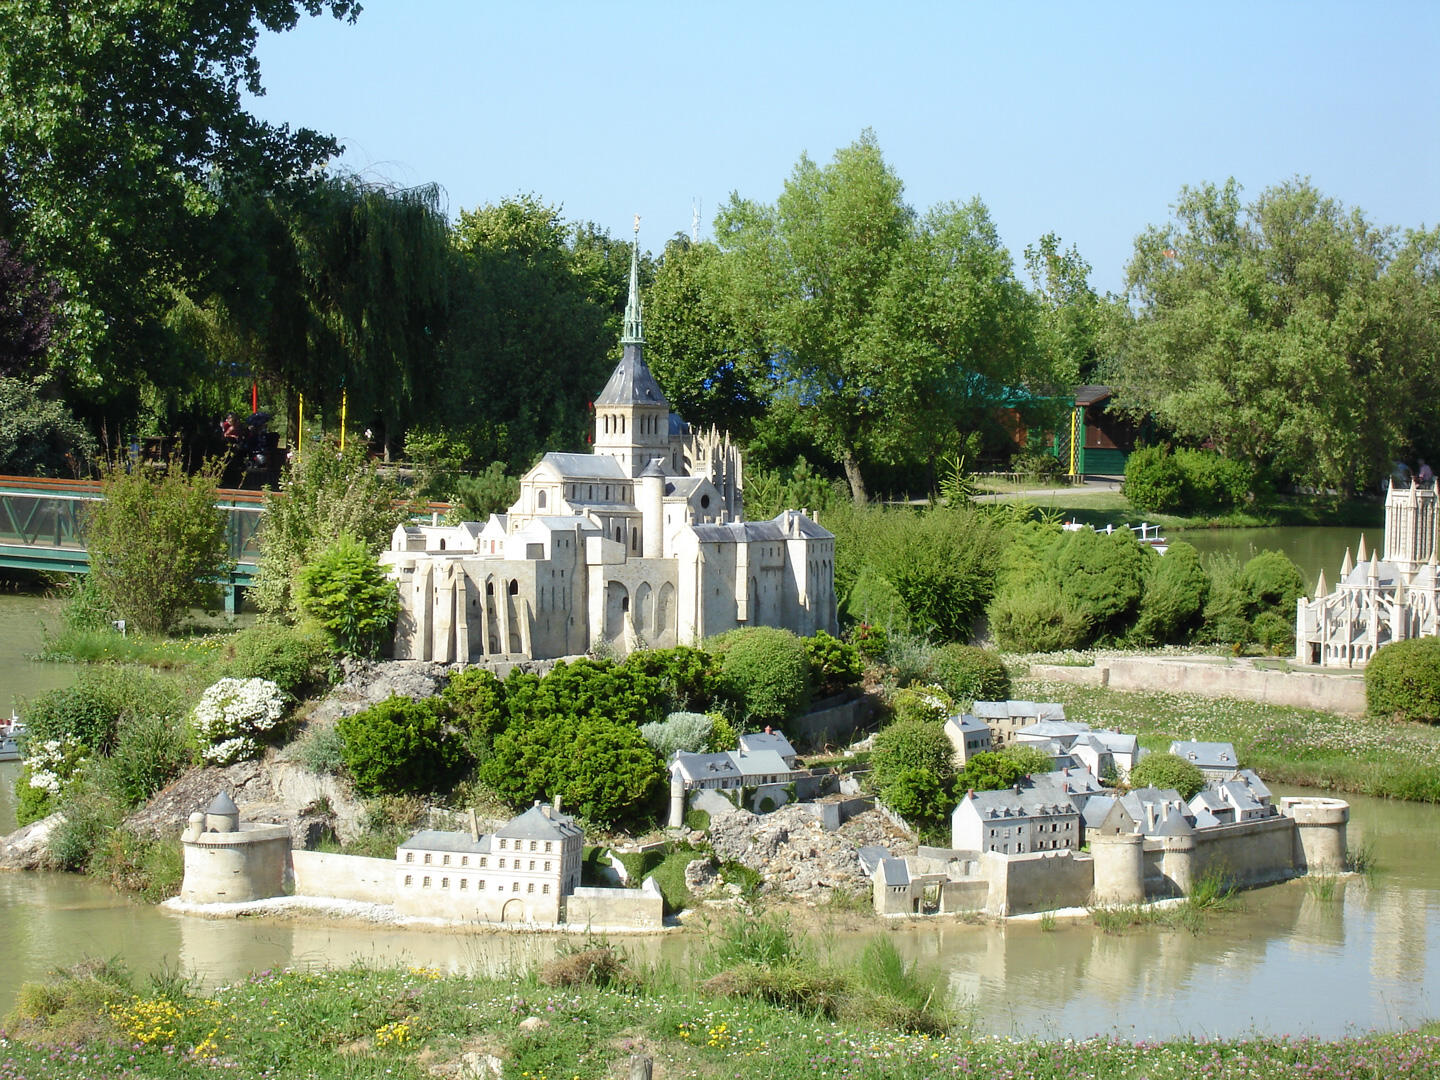 Detailliertes Miniaturmodell eines französischen Schlosses, umgeben von maßstabsgetreuen historischen Gebäuden und Grünanlagen, spiegelt das Erbe Frankreichs im Park France Miniature wider.